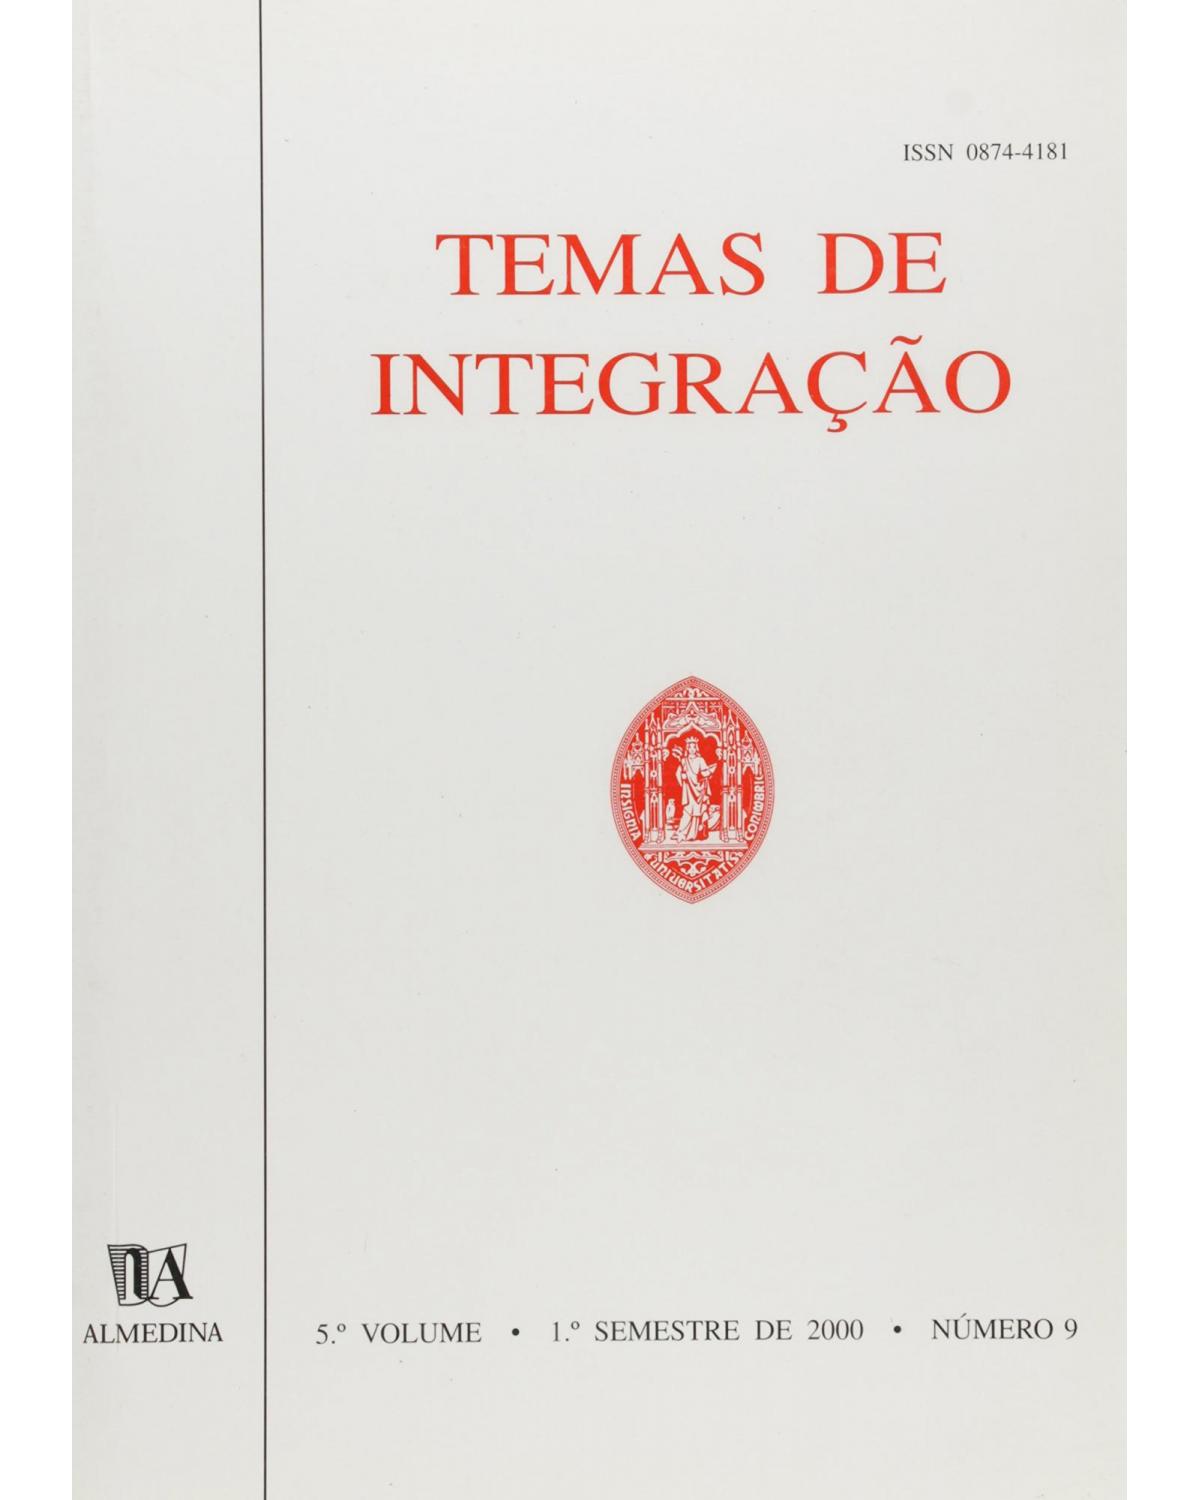 Temas de integração - Volume 5: nº 9 - 1º semestre de 2000 - 1ª Edição | 2000